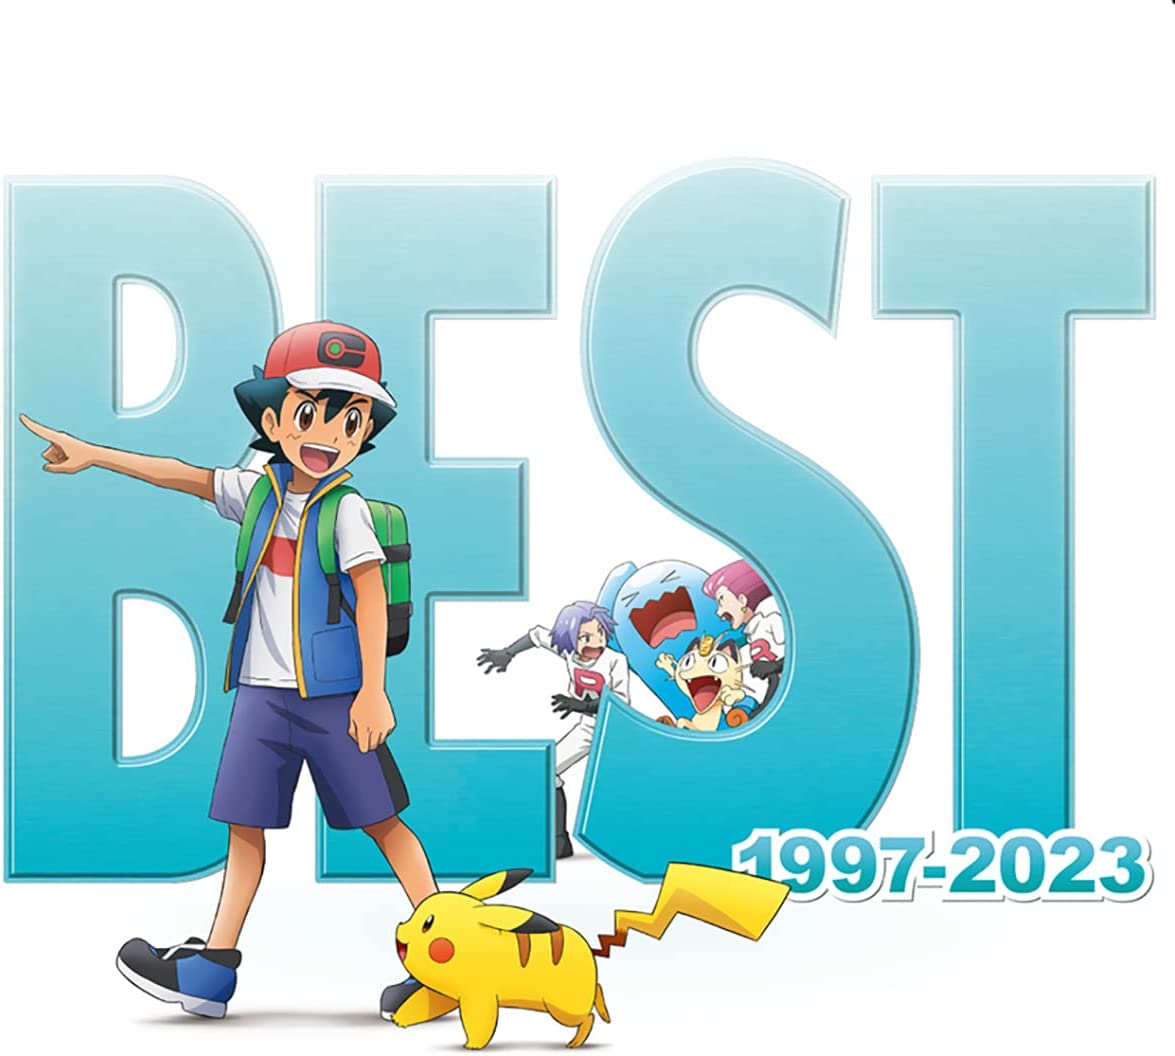 ポケモンTVアニメ主題歌 BEST OF BEST OF BEST 1997-2023 (通常盤) (特典なし)